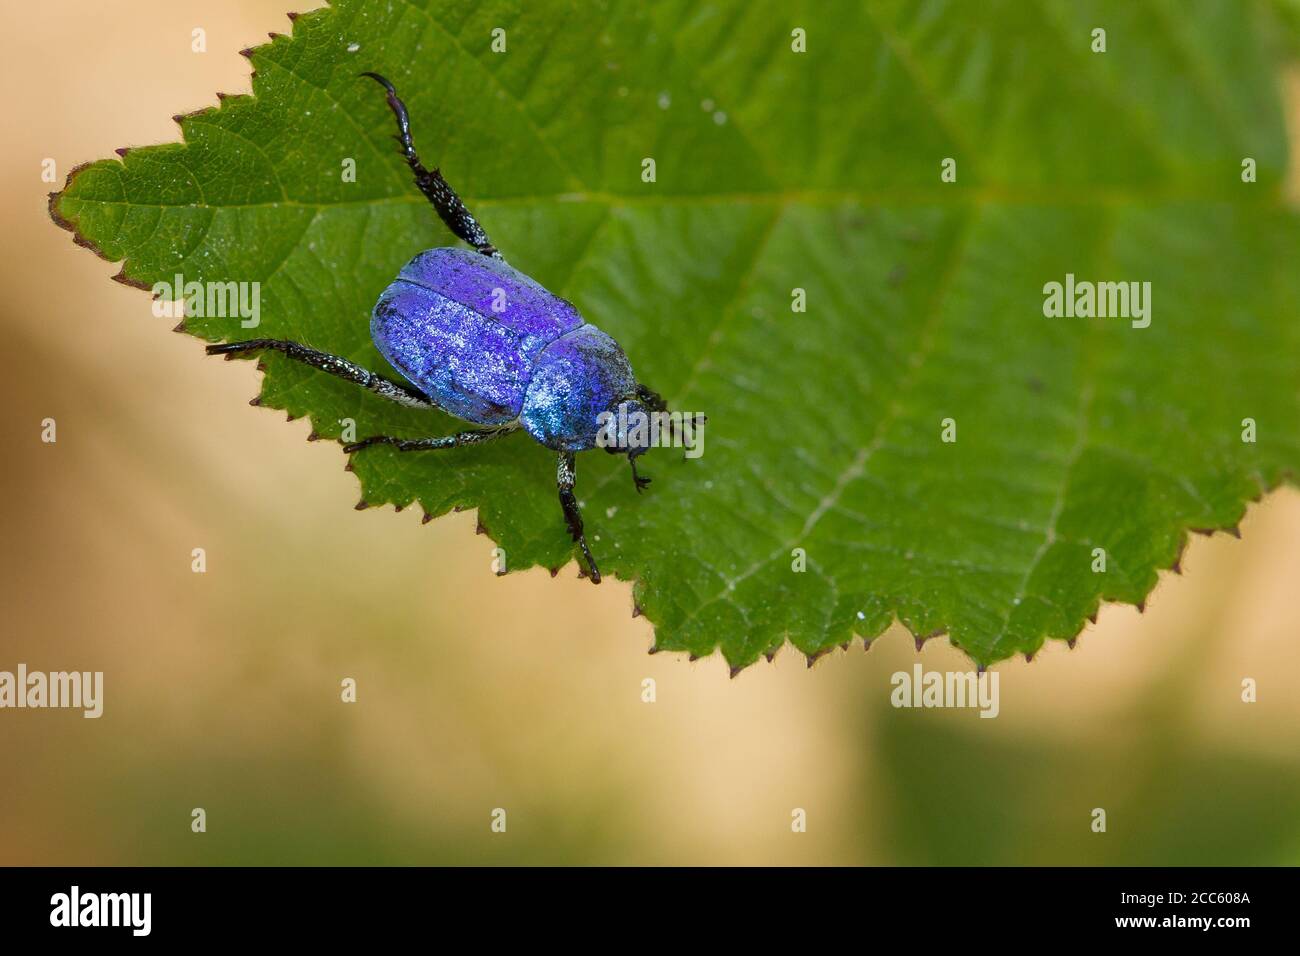 High angle shot of a Hoplia coerulea, blue metalized beetle on the leaf Stock Photo